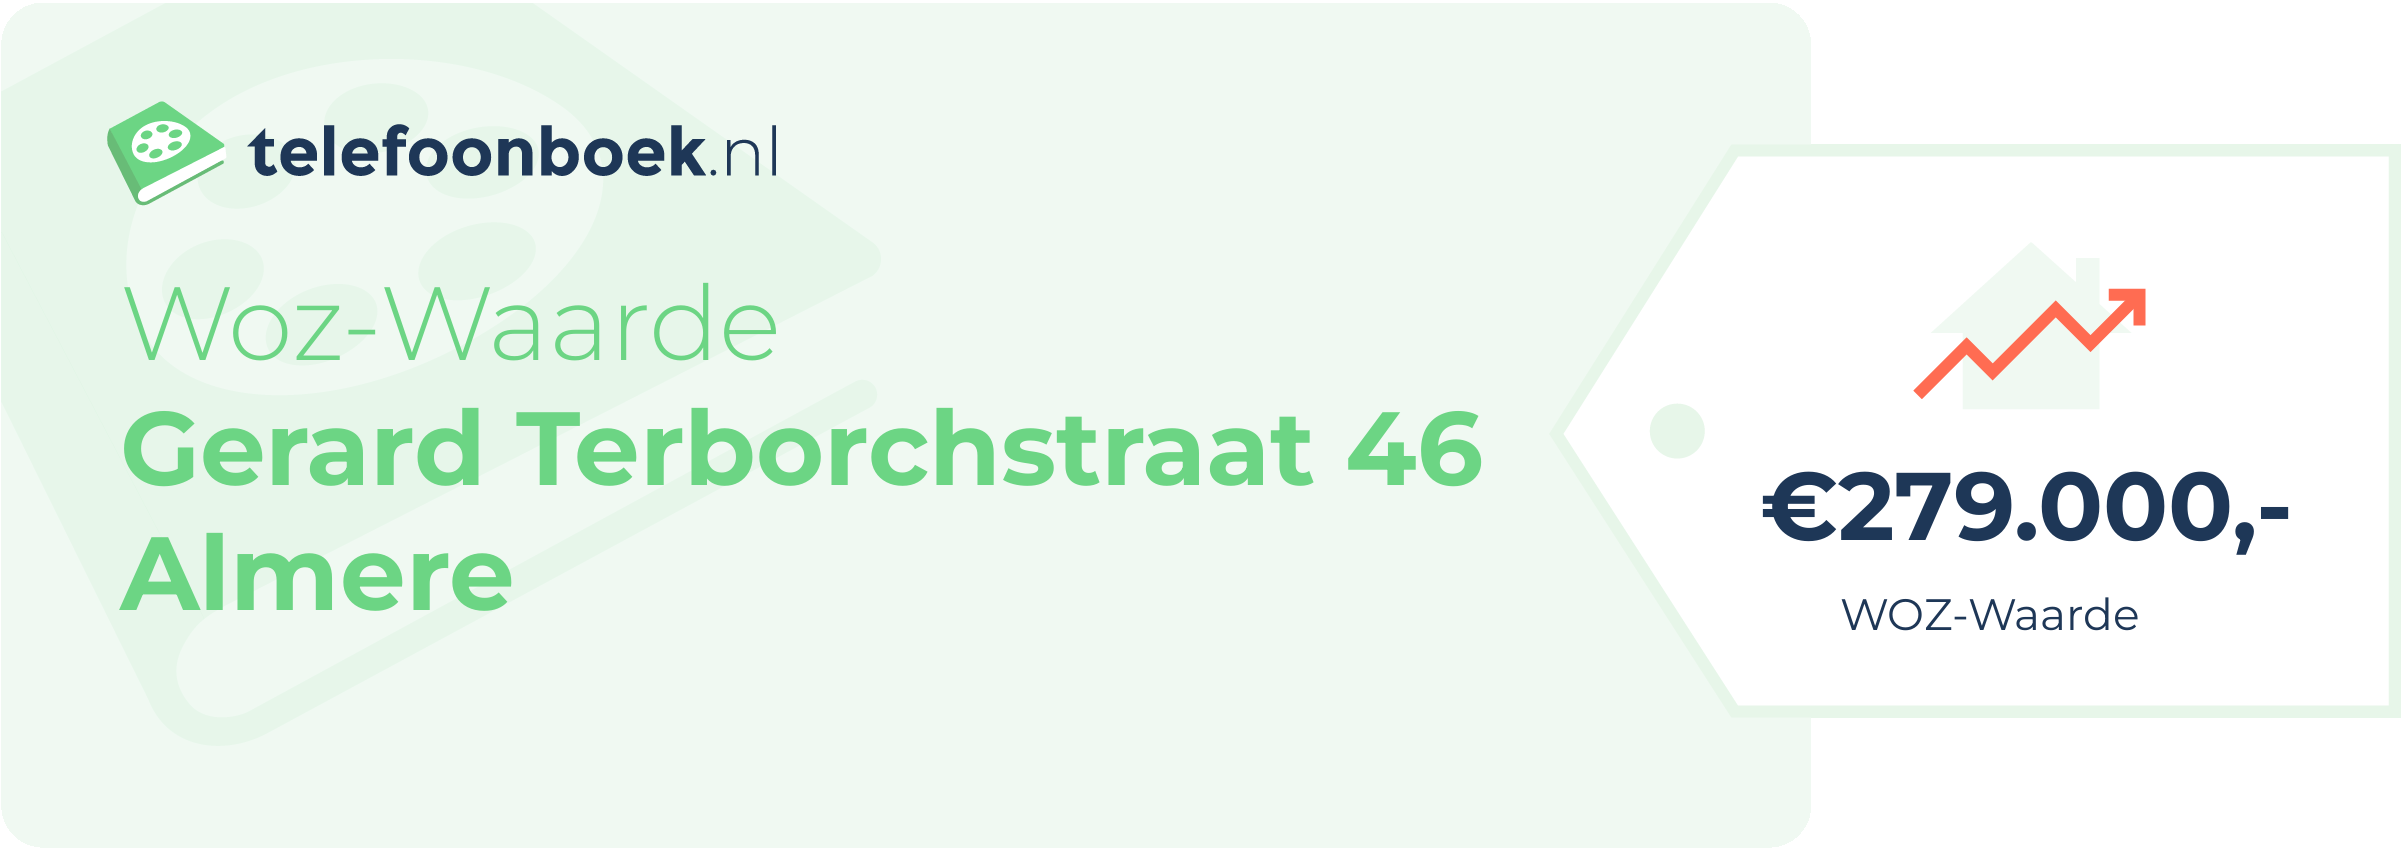 WOZ-waarde Gerard Terborchstraat 46 Almere